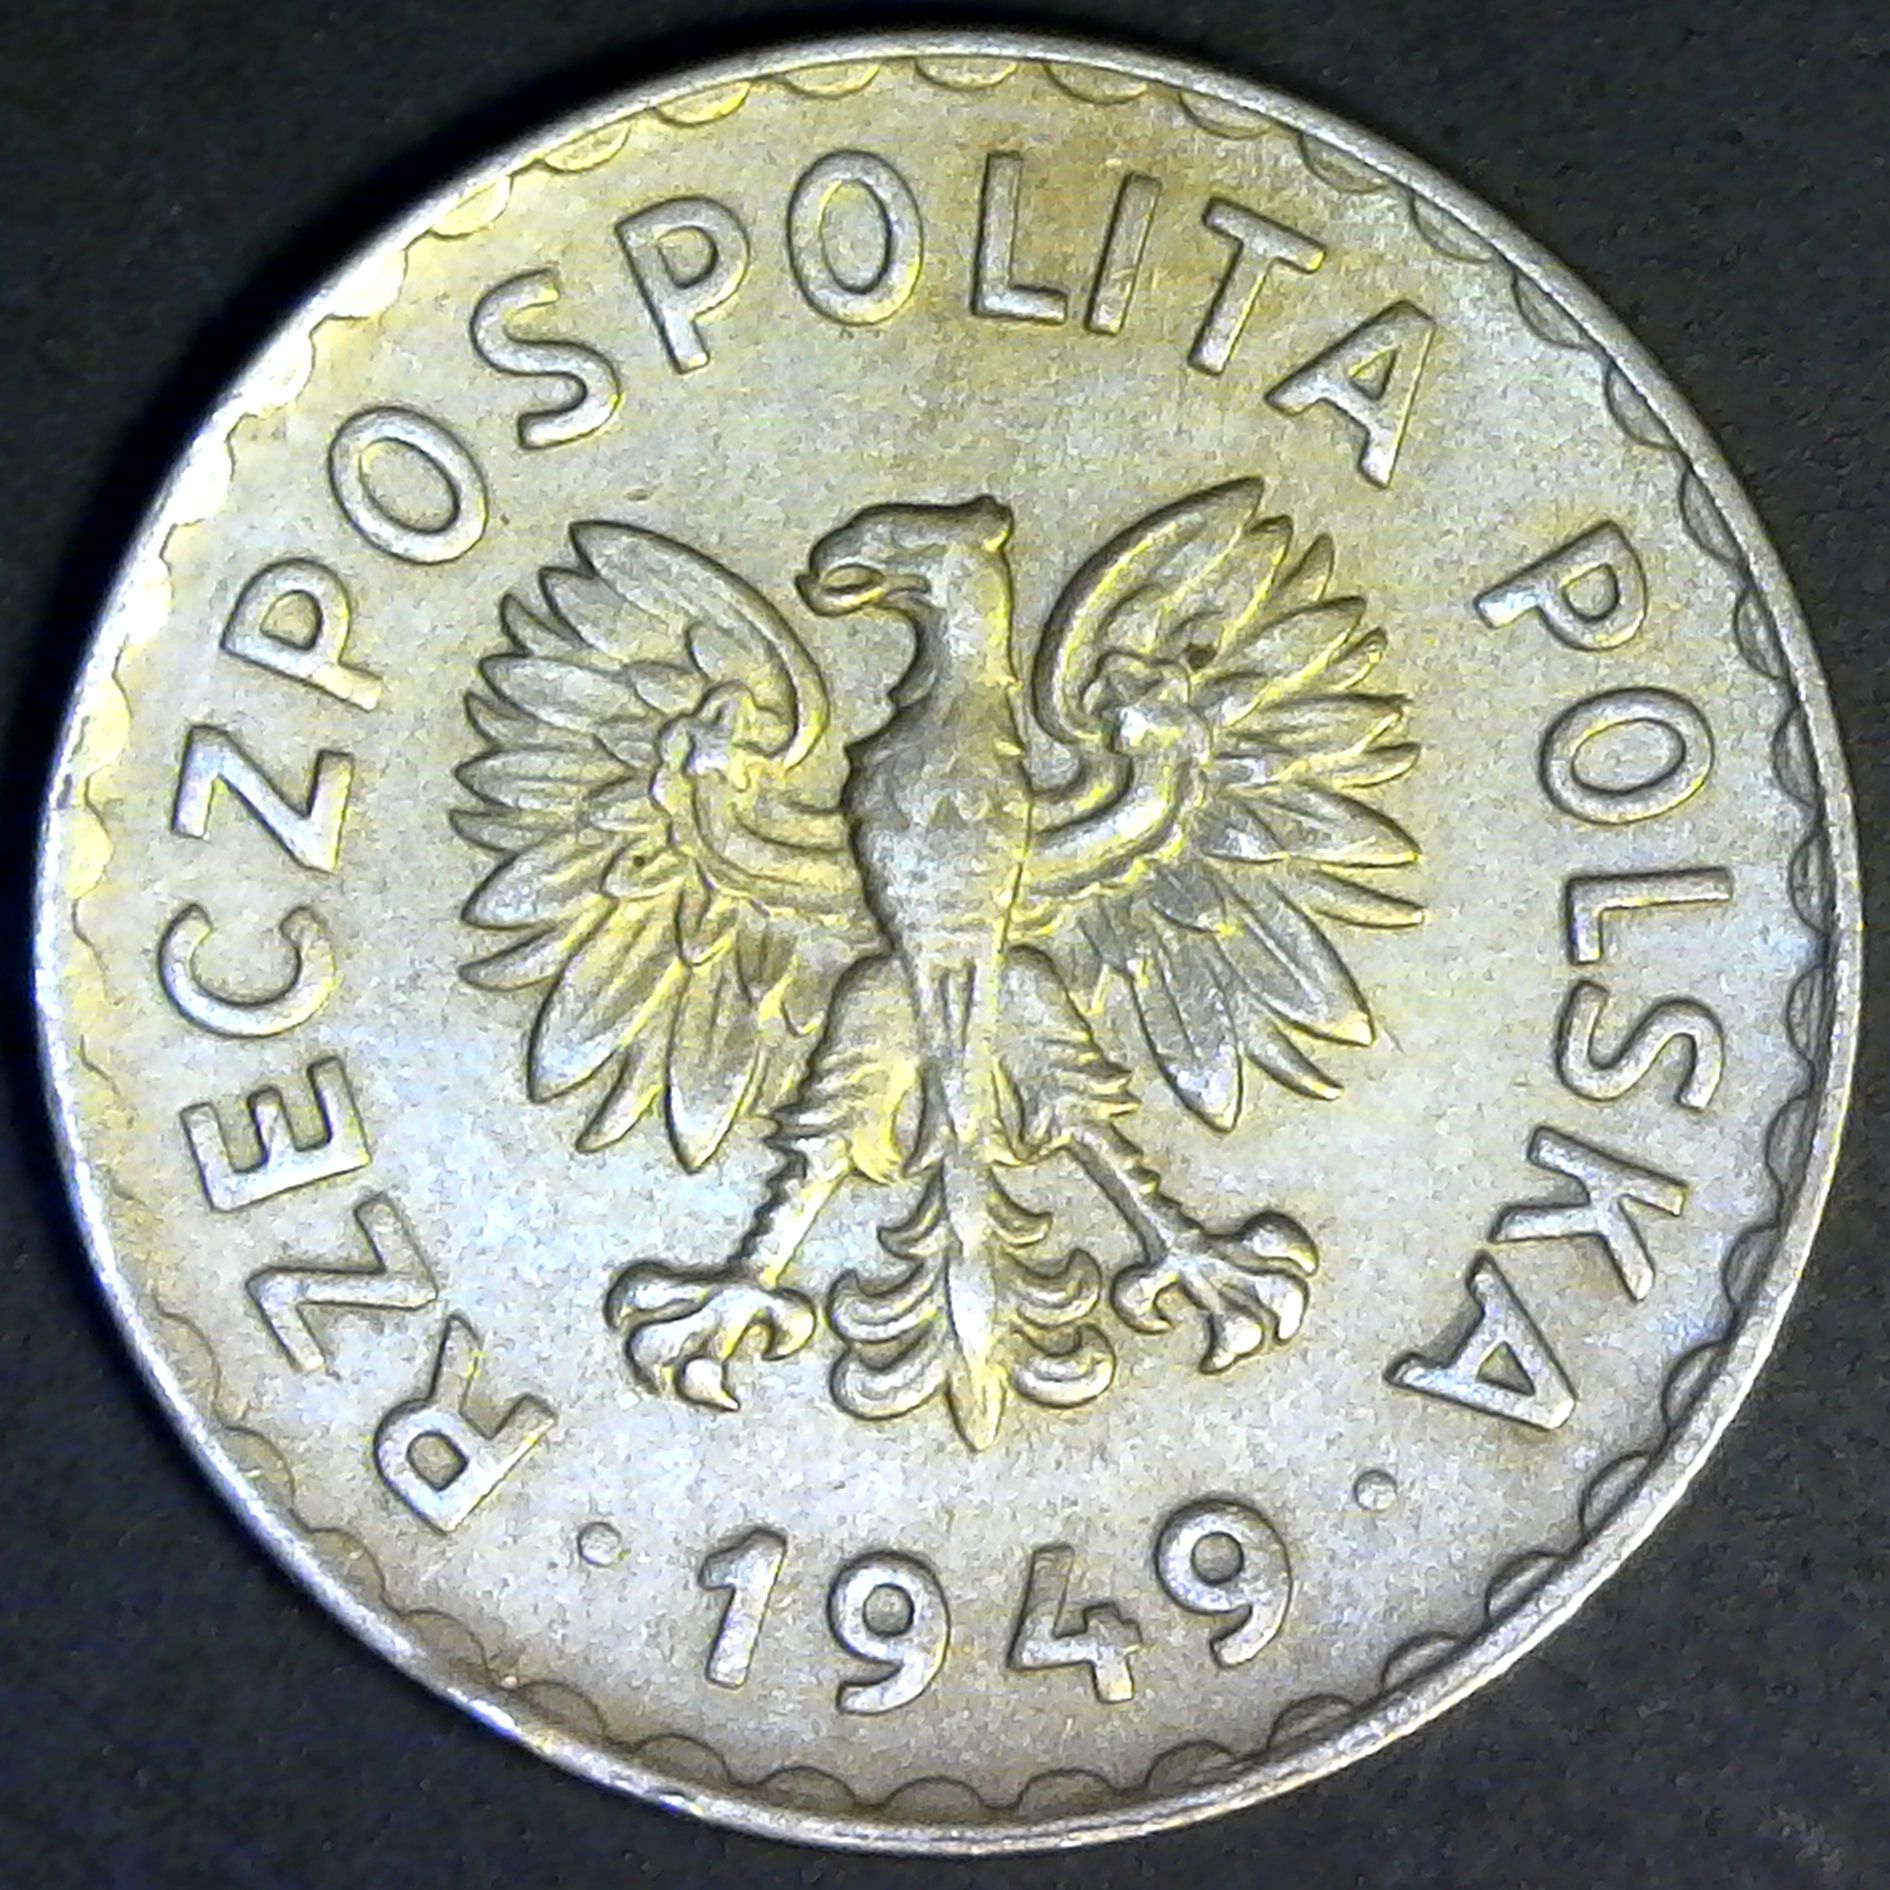 Poland 1 Zloty 1949 obv.jpg